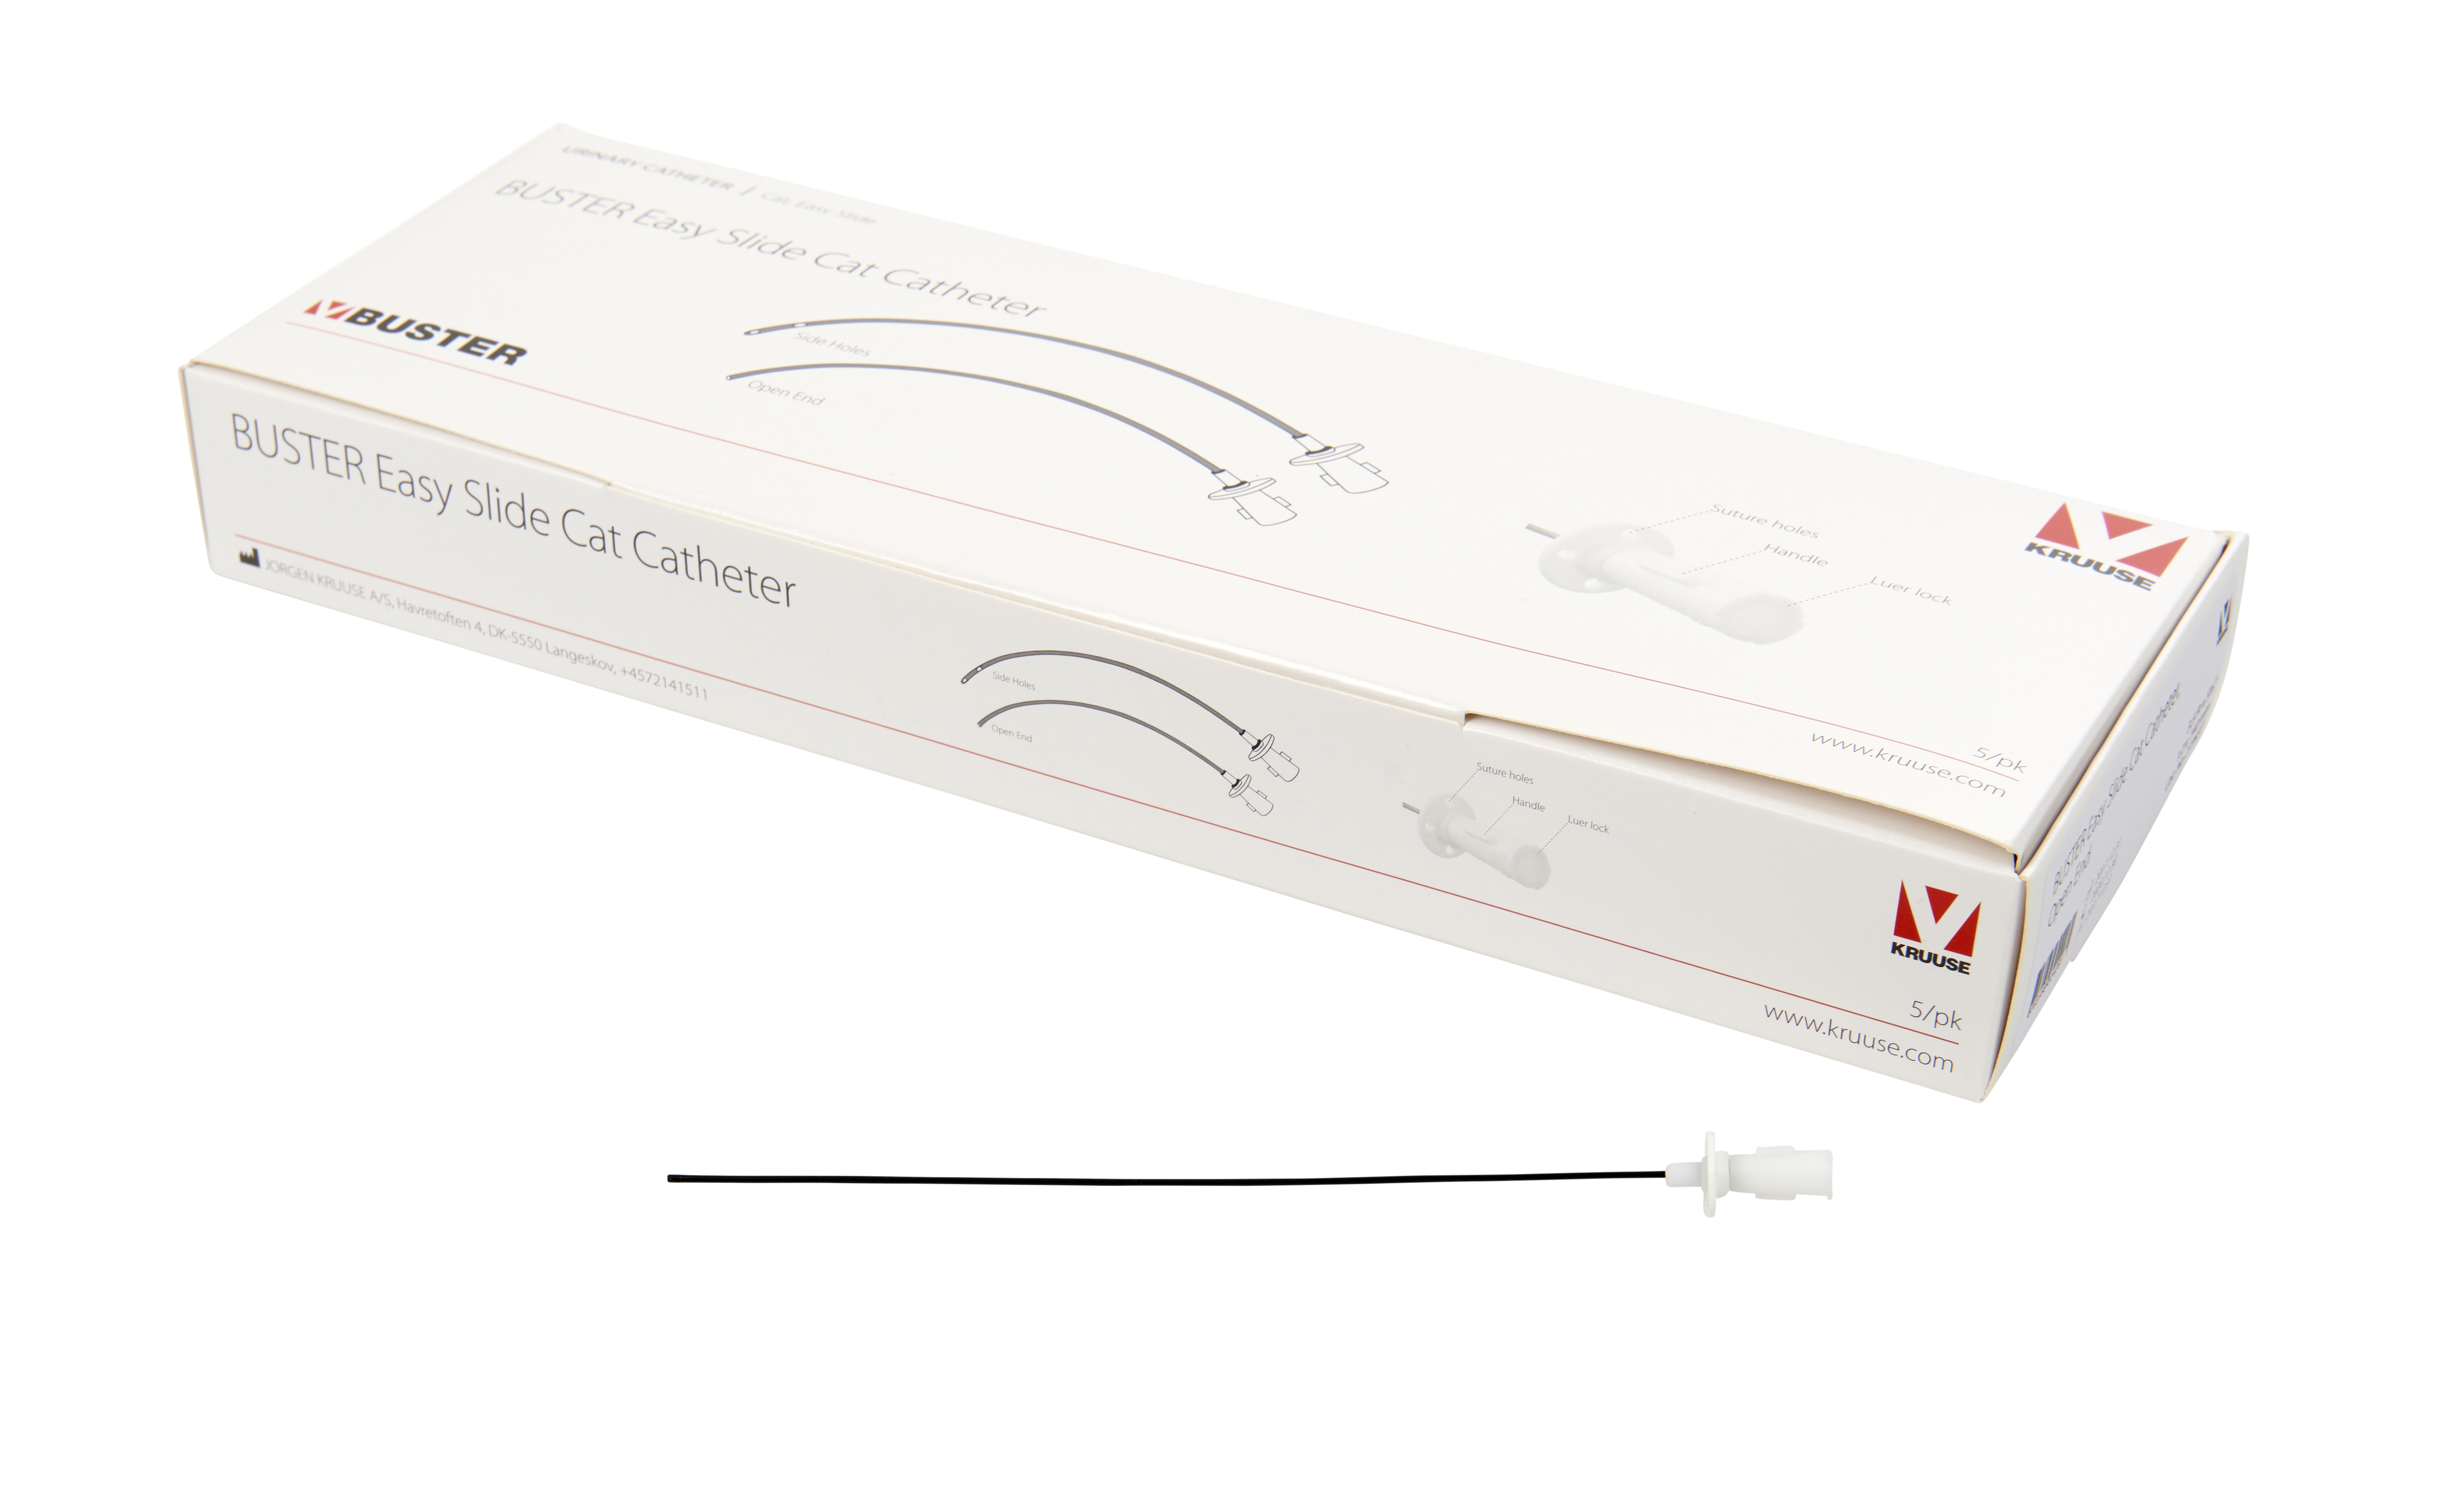 BUSTER Easy Slide Cat Catheter, 1.2 x 110 mm/3.5 Fr x 4⅓